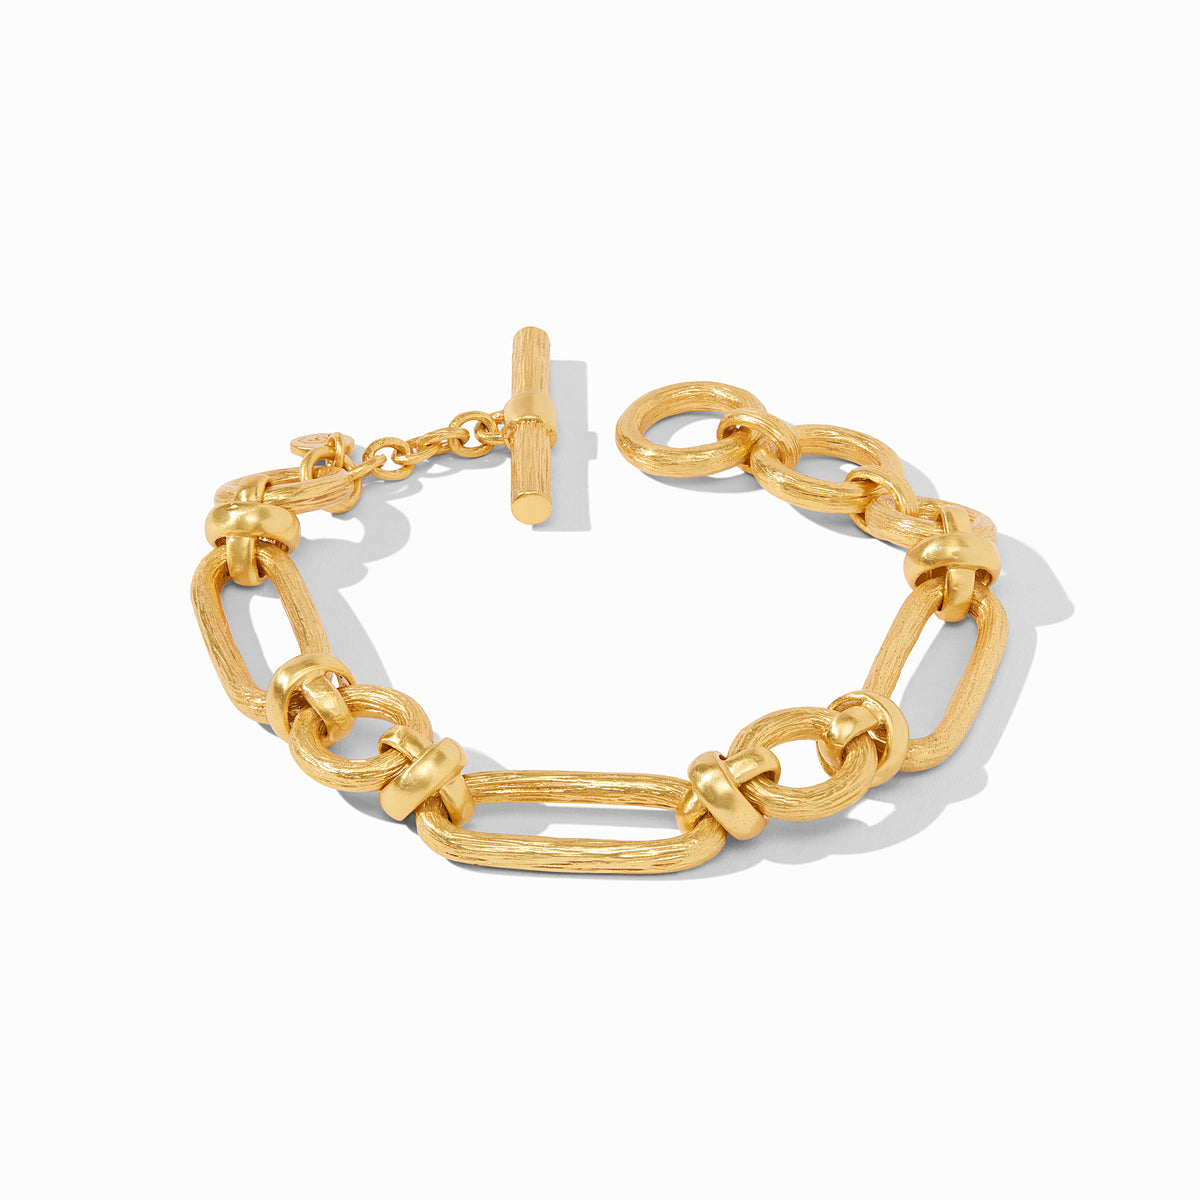 Julie Vos - Ivy Link Bracelet, Gold